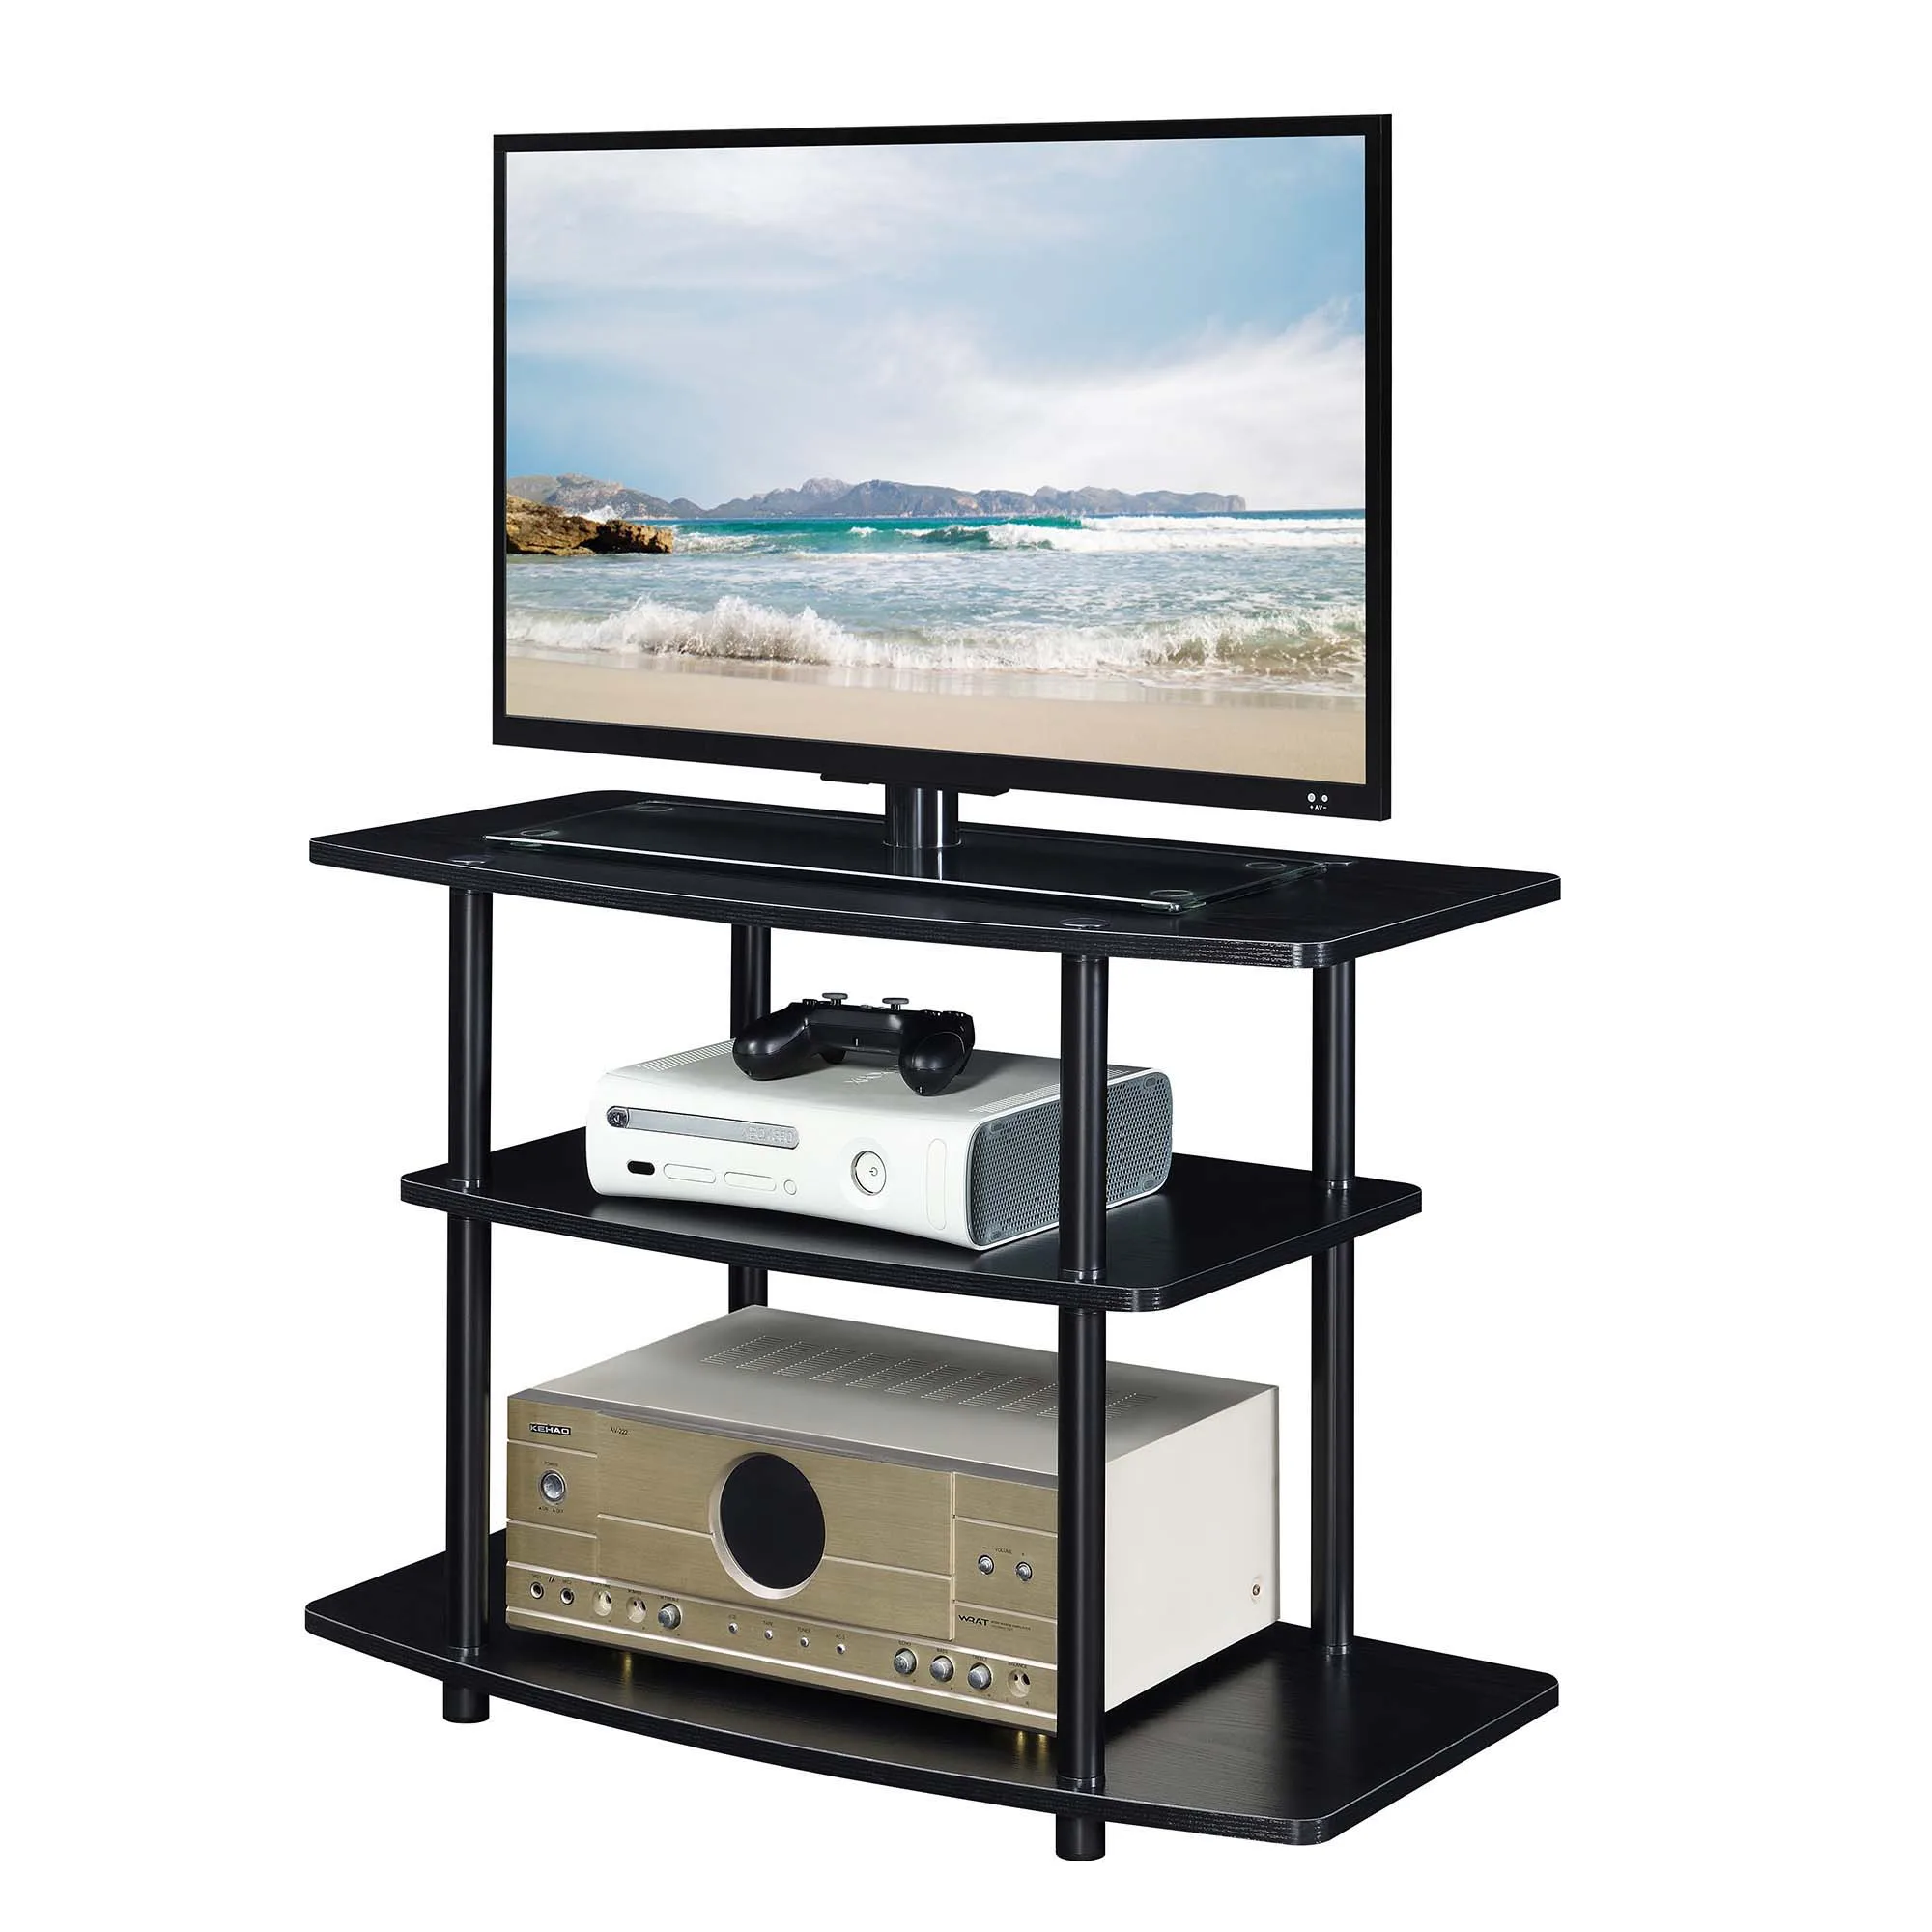 

2Go без инструментов, 3-уровневая ТВ-подставка, деревянная ТВ-подставка, ТВ-подставка для гостиной, мини-ТВ, Ретро ТВ-подставки, мебель